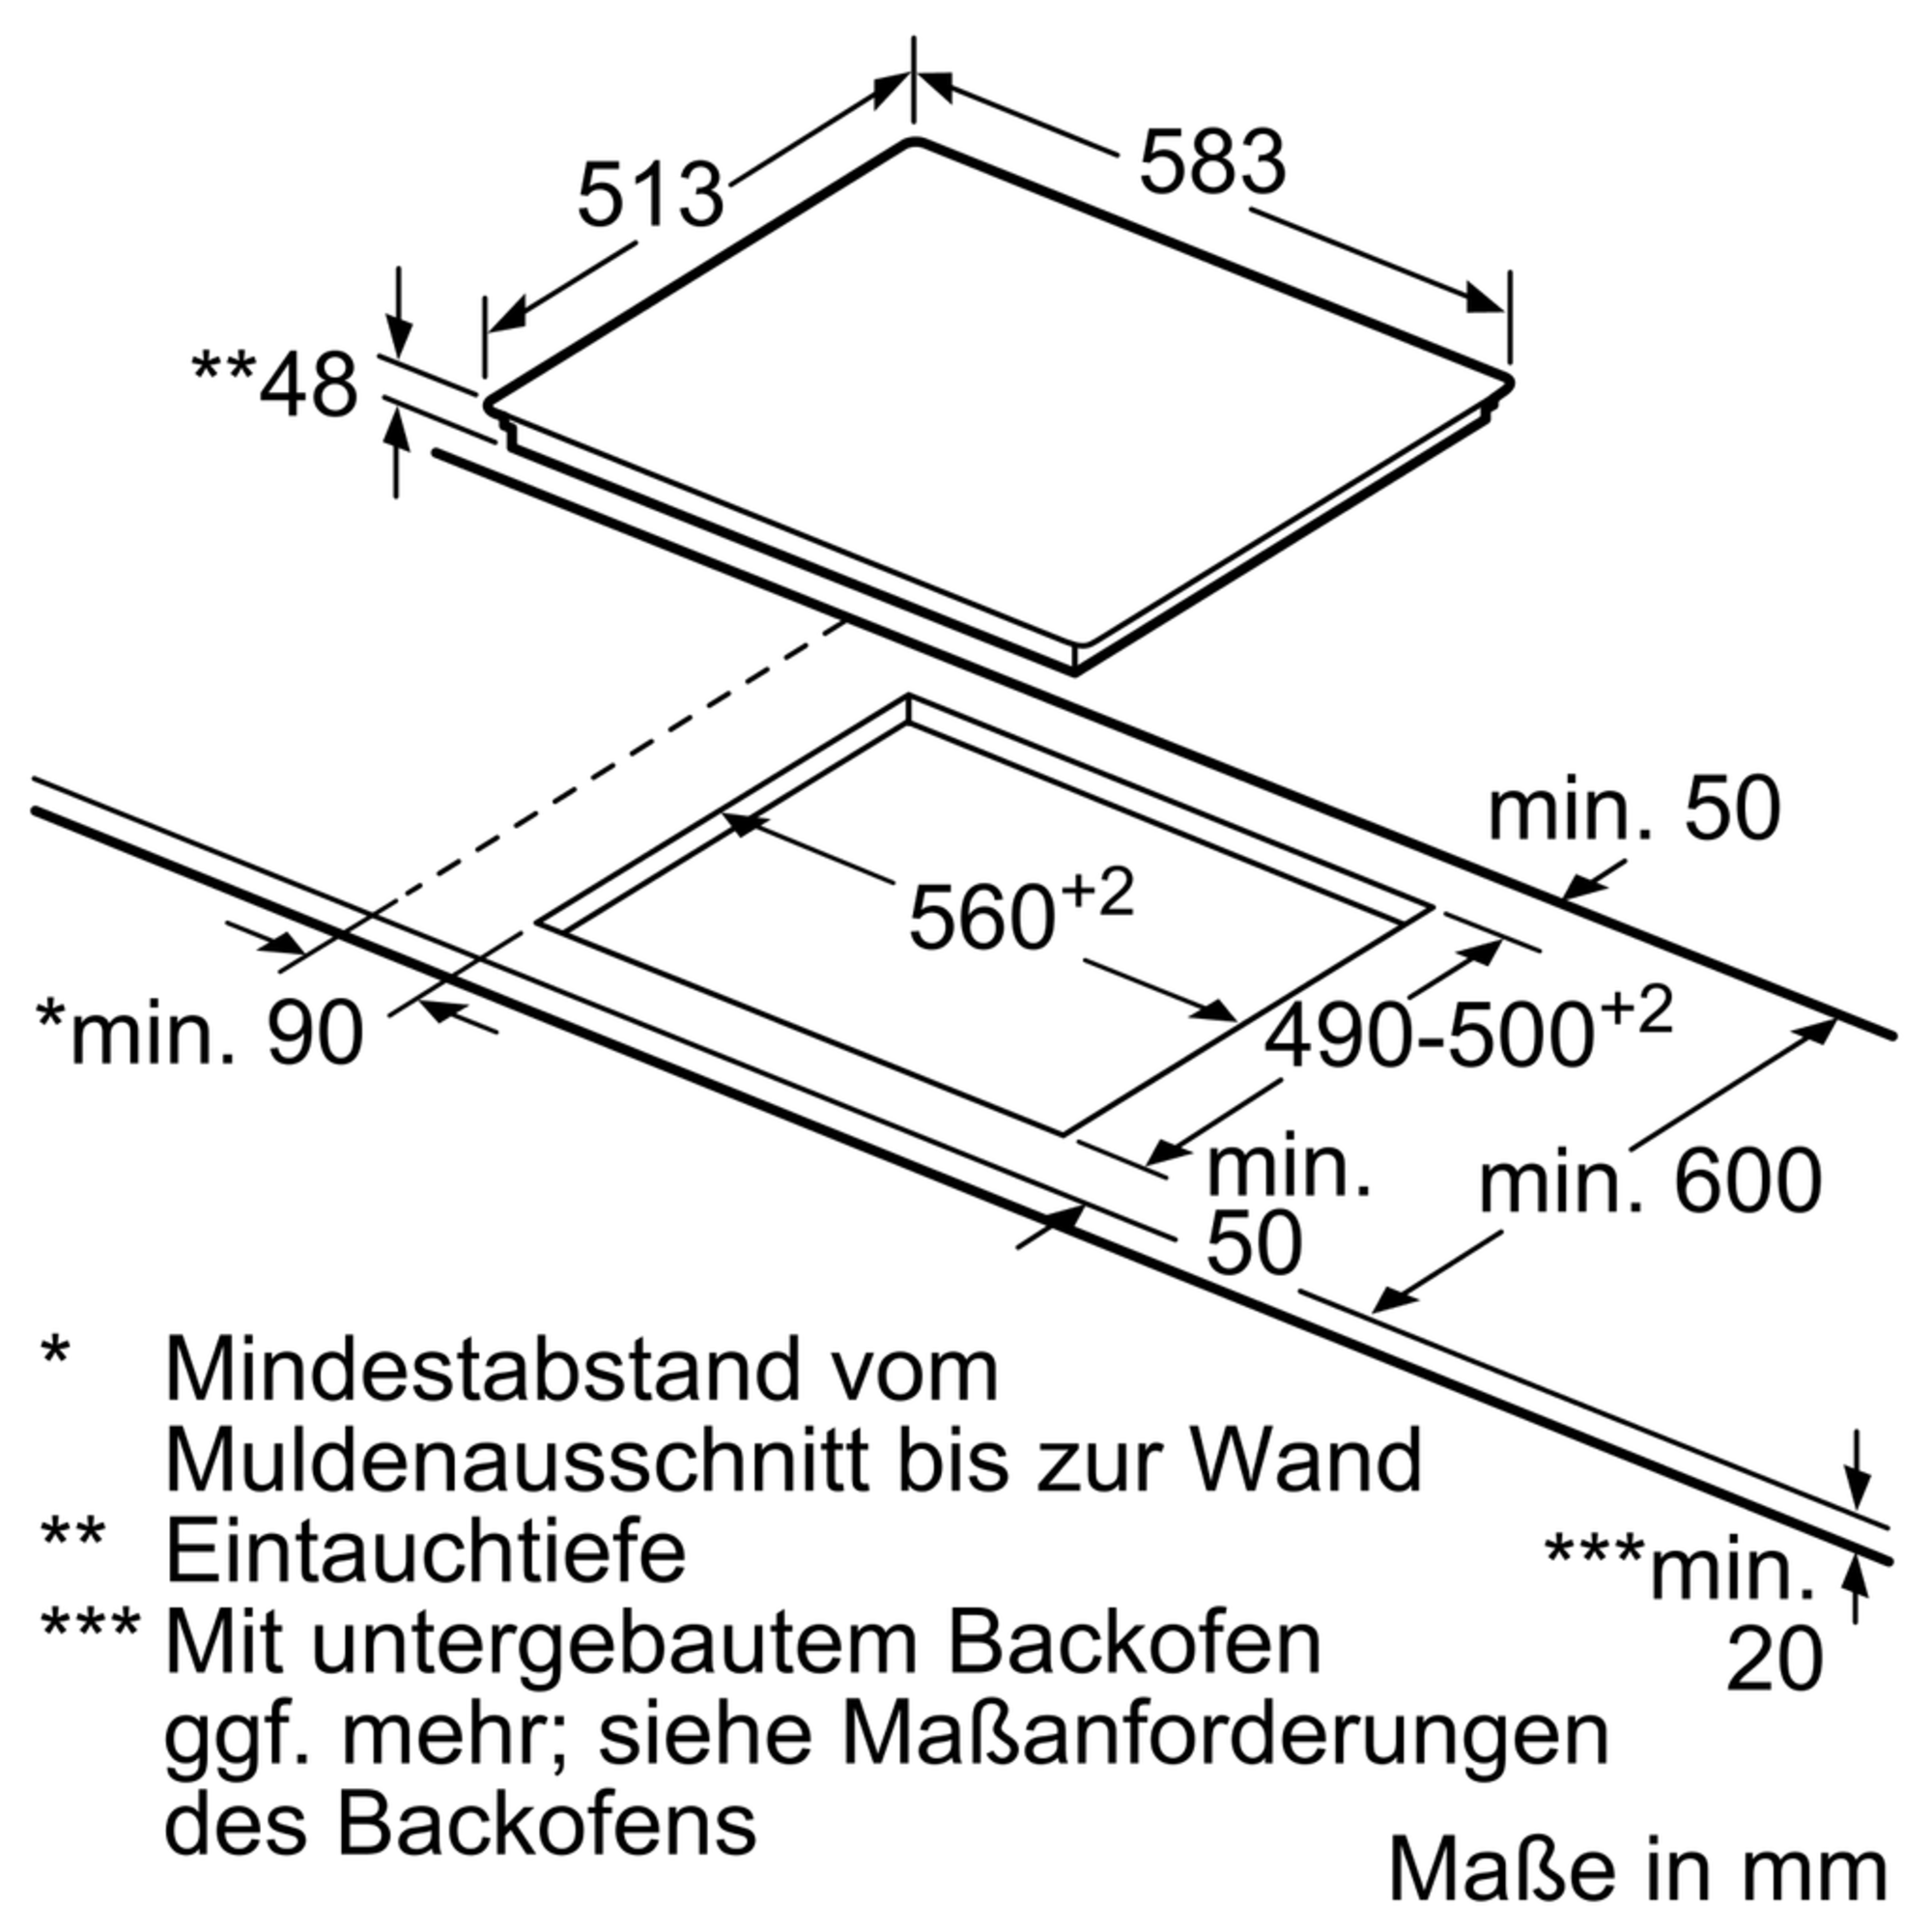 NEFF breit, (583 mm T16BT76N0 N 4 TBT Kochfelder) - 1676 Elektrokochfeld